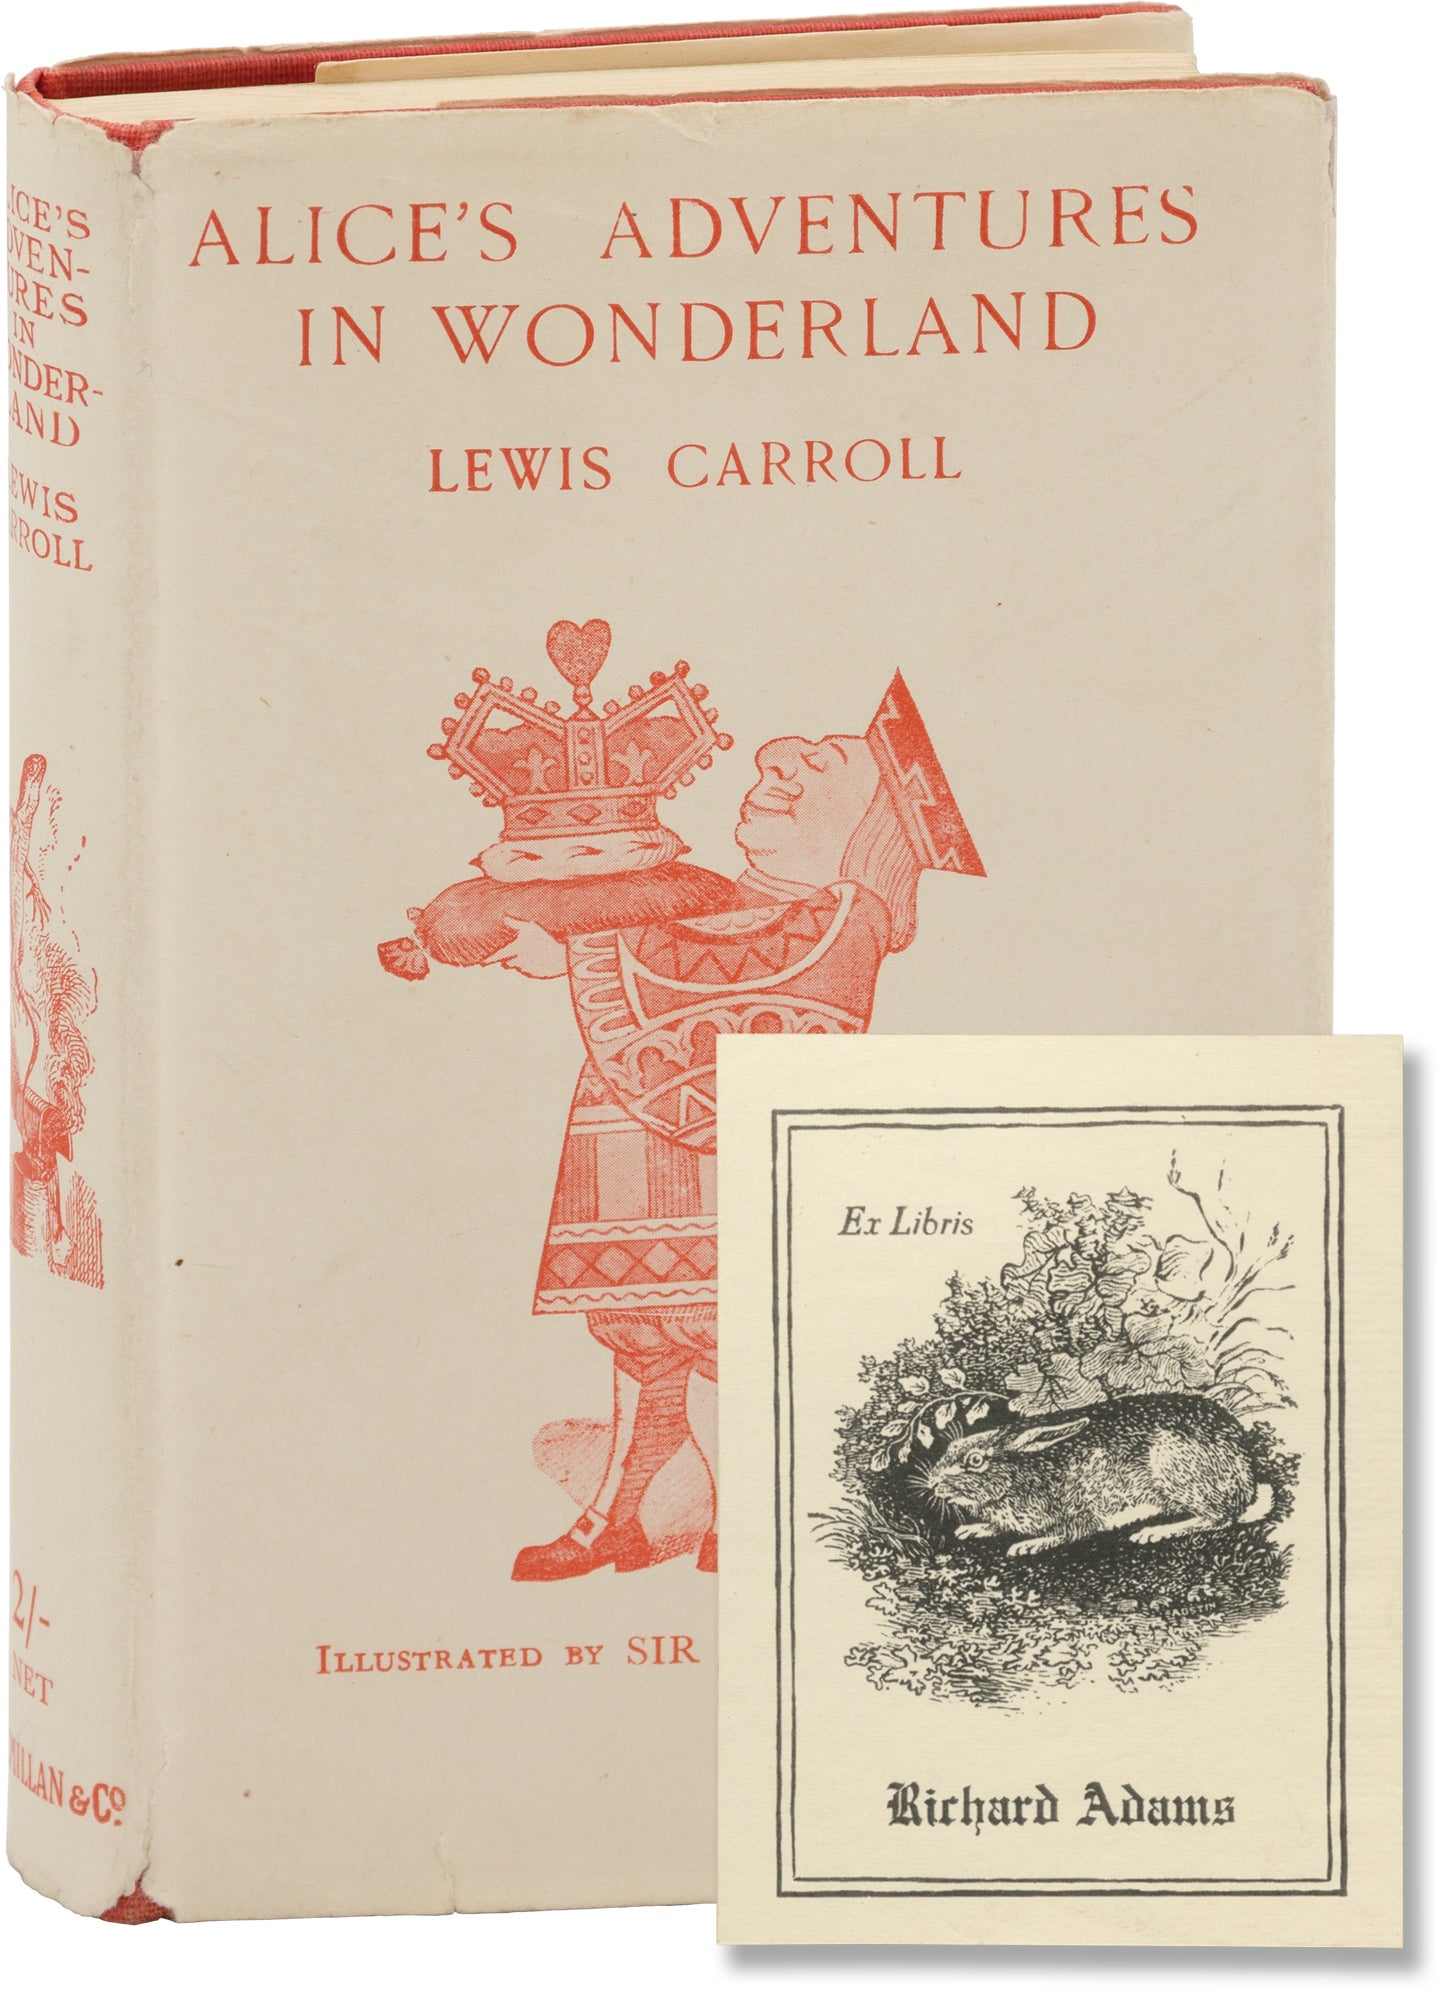 Alice's Adventures in Wonderland (Copy belonging to author Richard Adams)